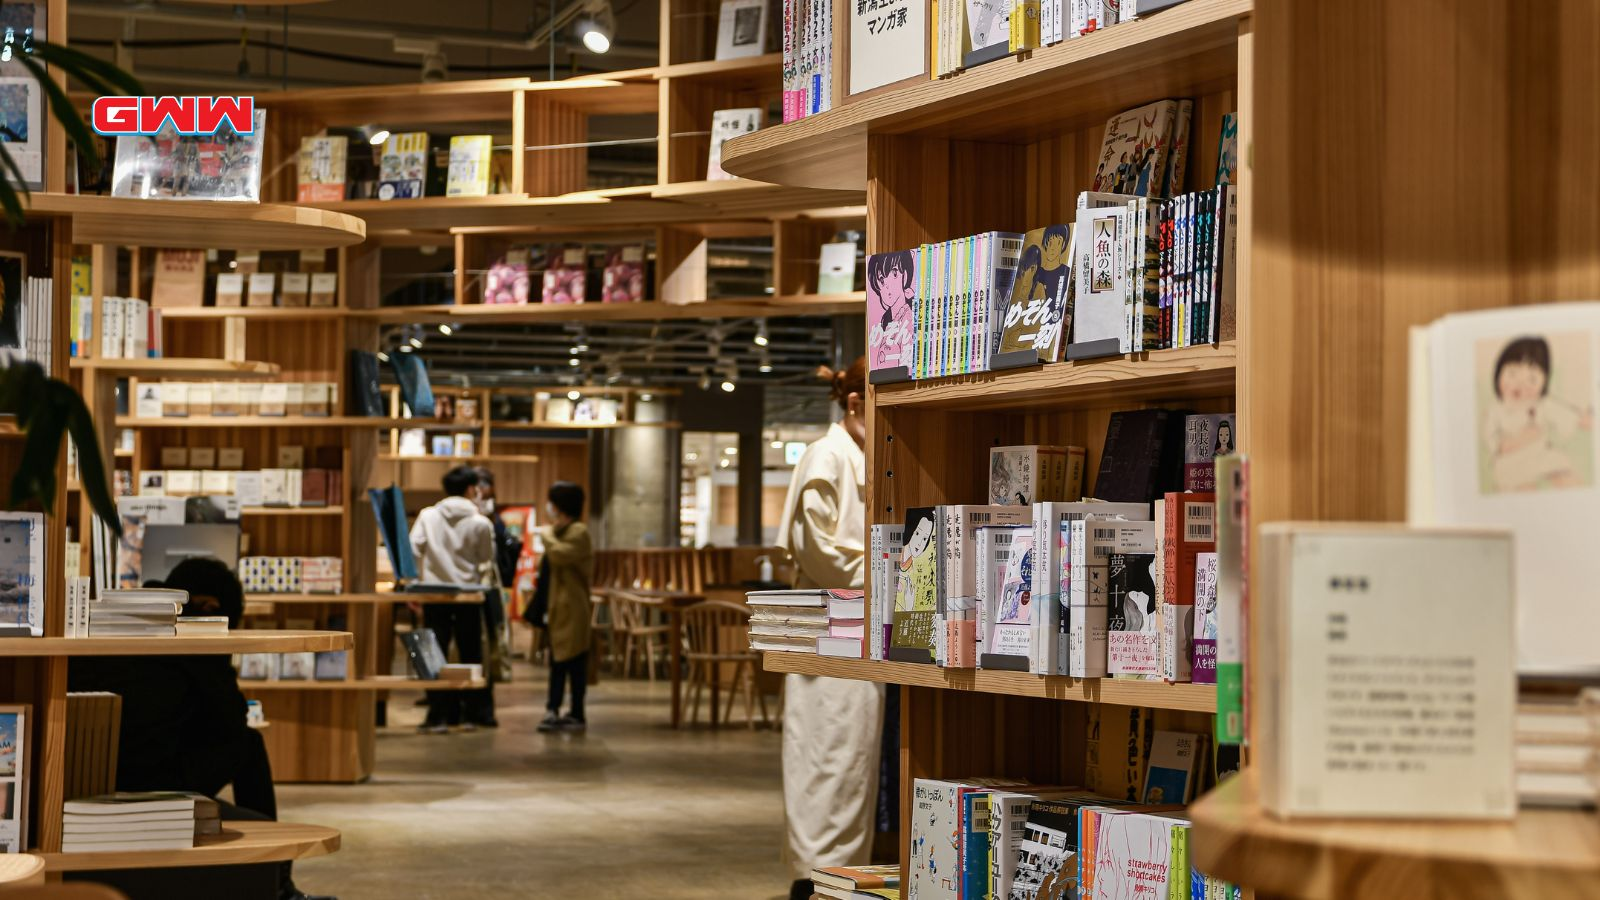 Manga store shelves offer manga for free reading